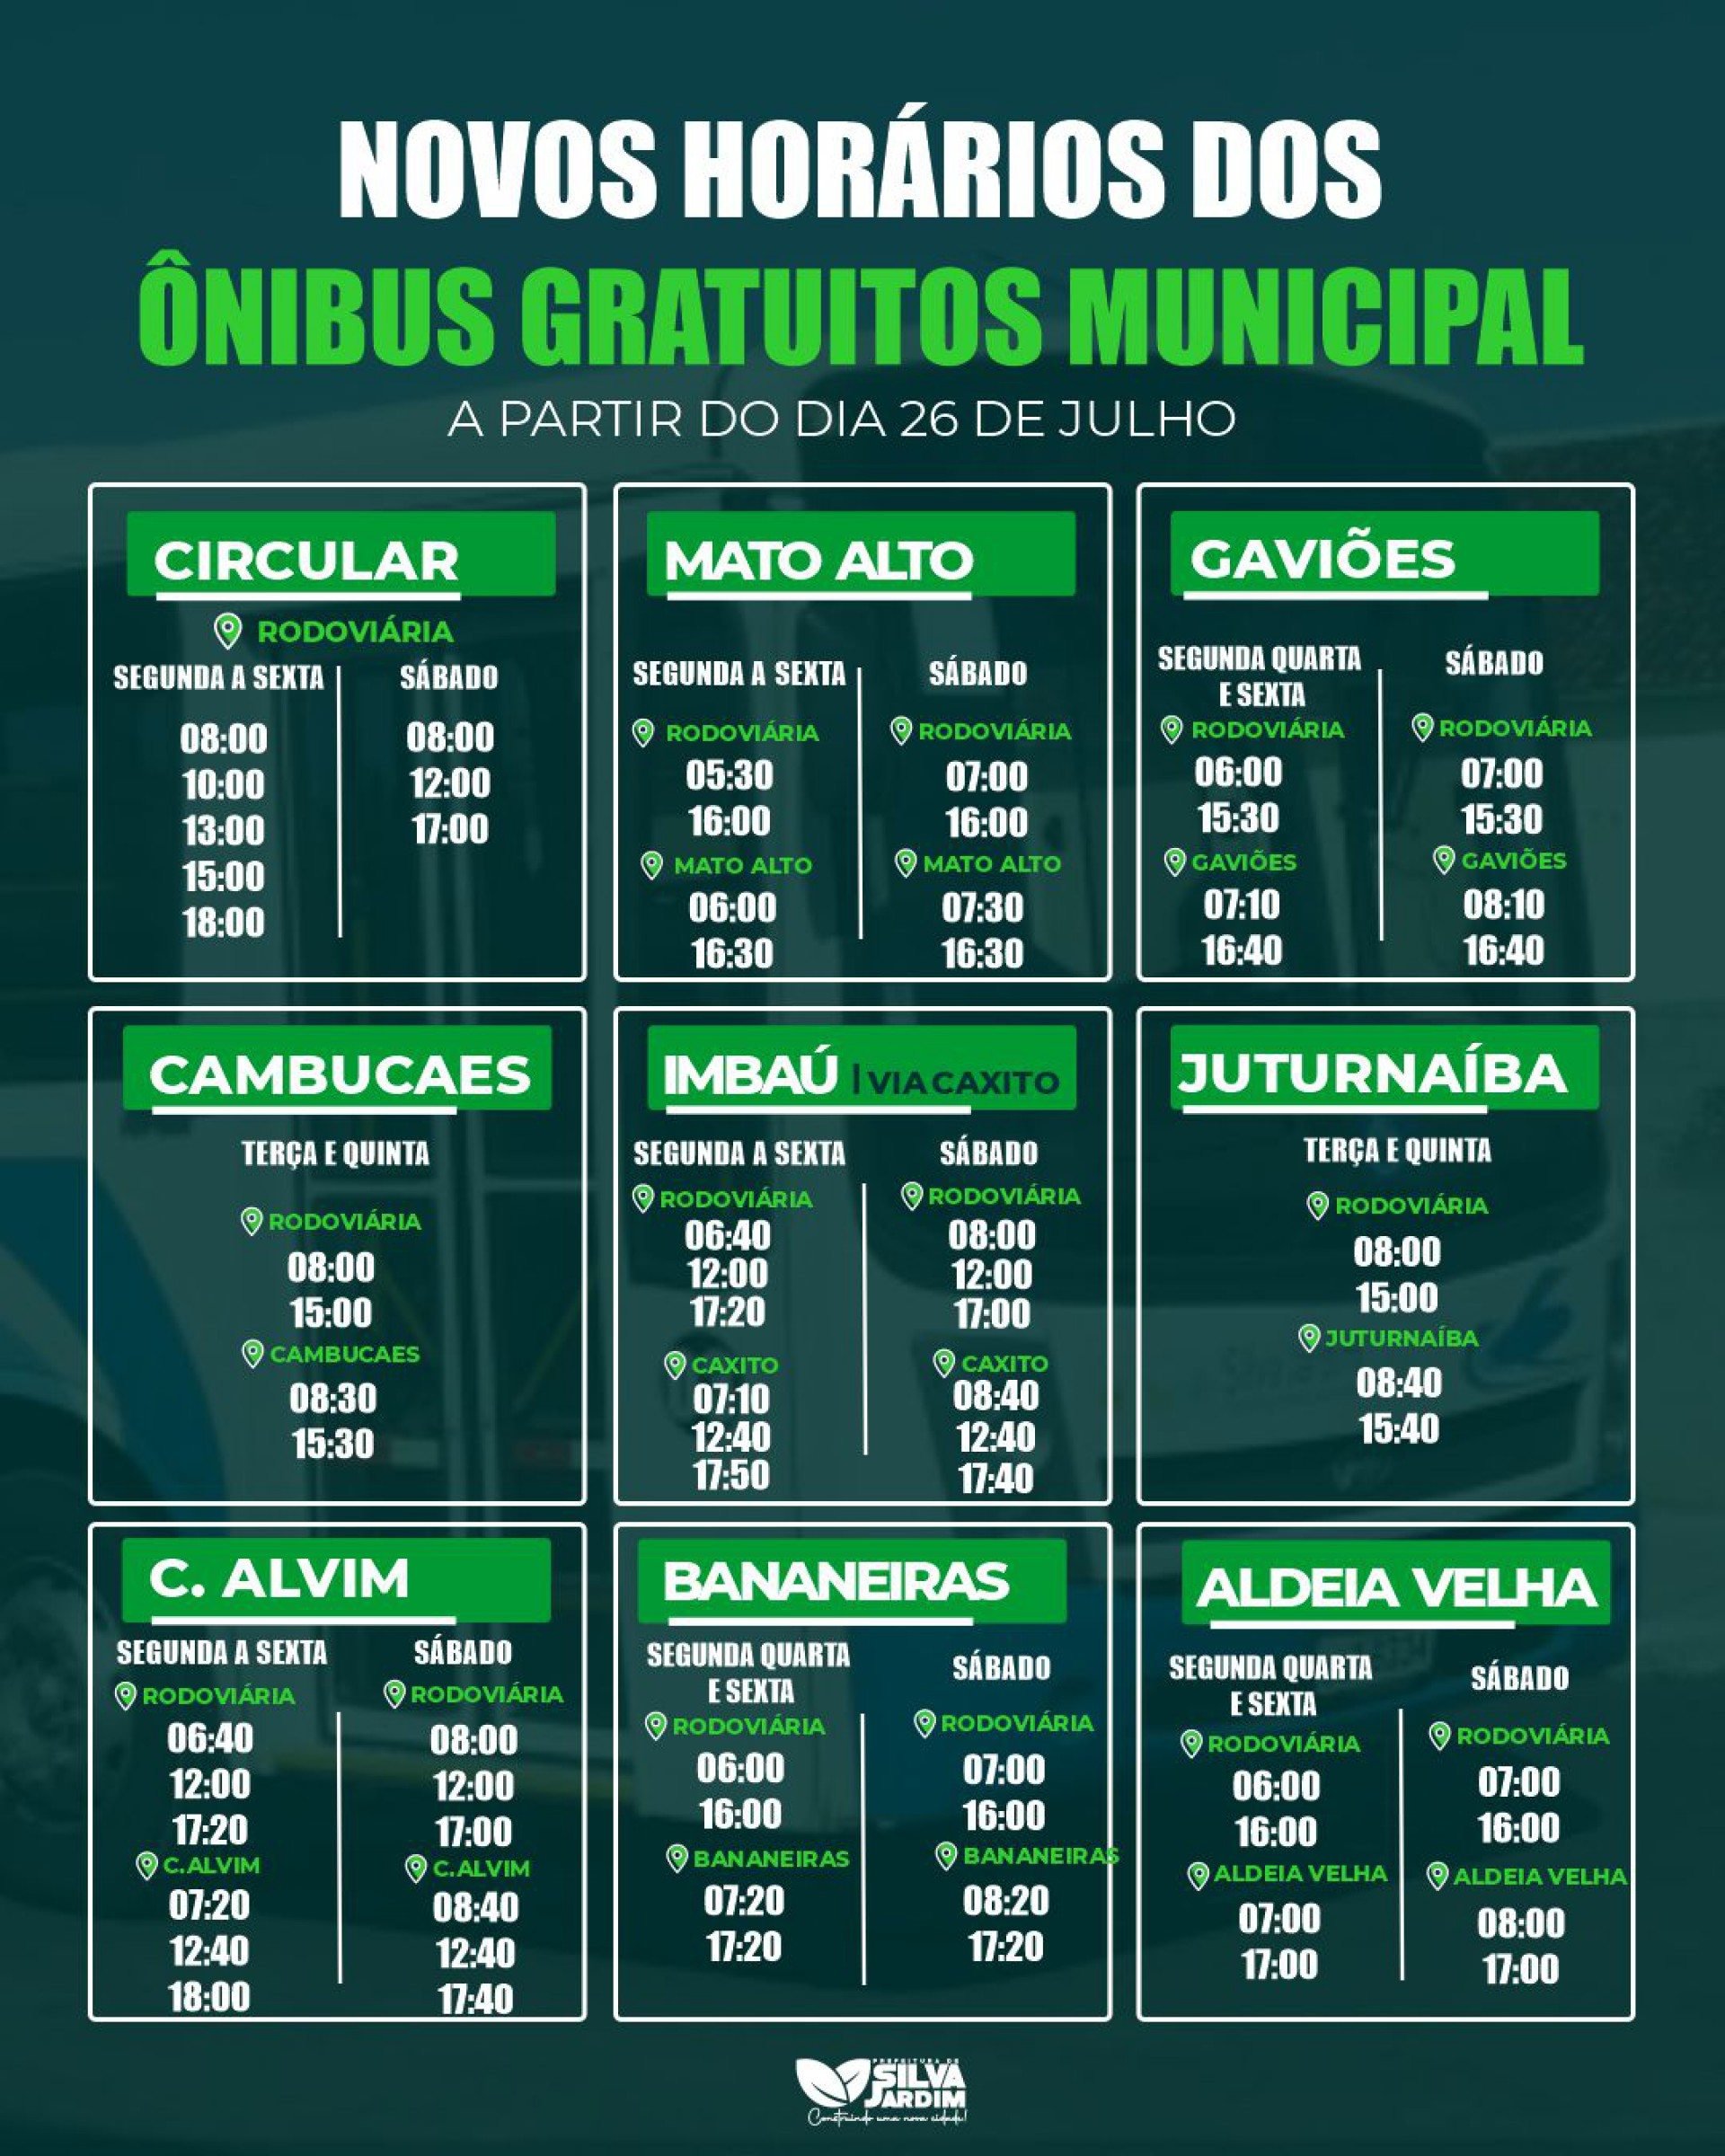 Novos horários divulgados pela Prefeitura de Silva Jardim - Foto: Divulgação